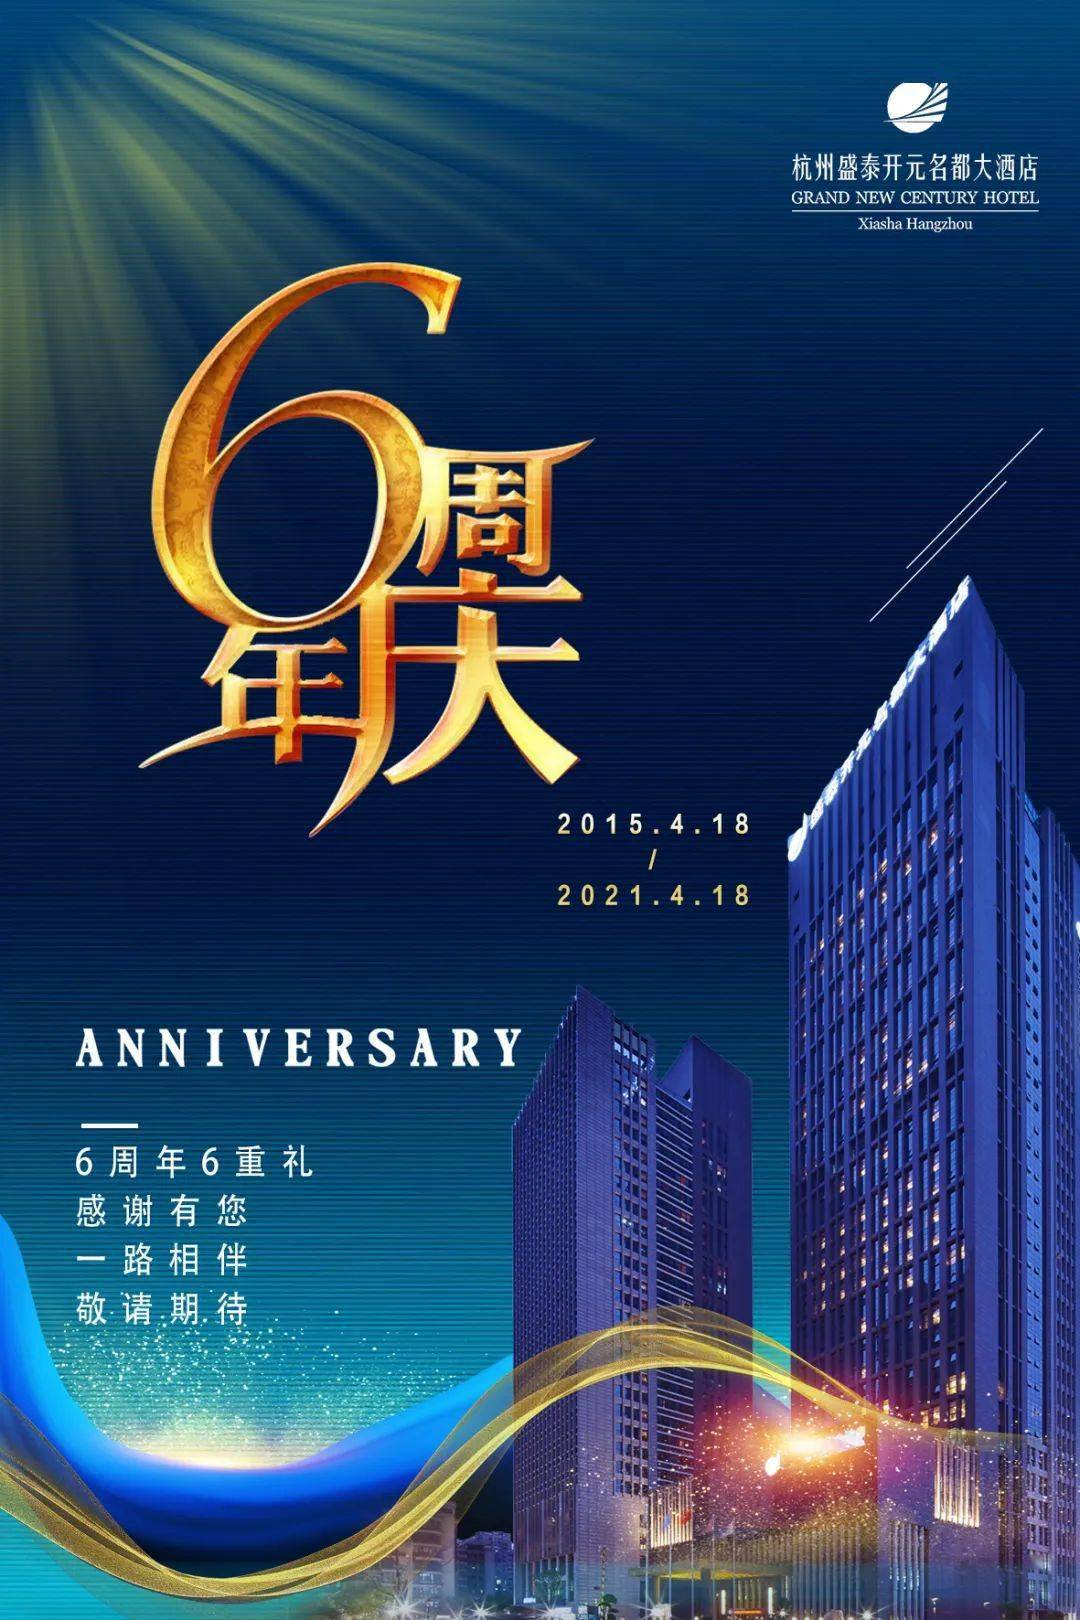 六重大礼，诚意满满！杭州盛泰开元名都大酒店六周年来搞事情啦！错过后悔一年！